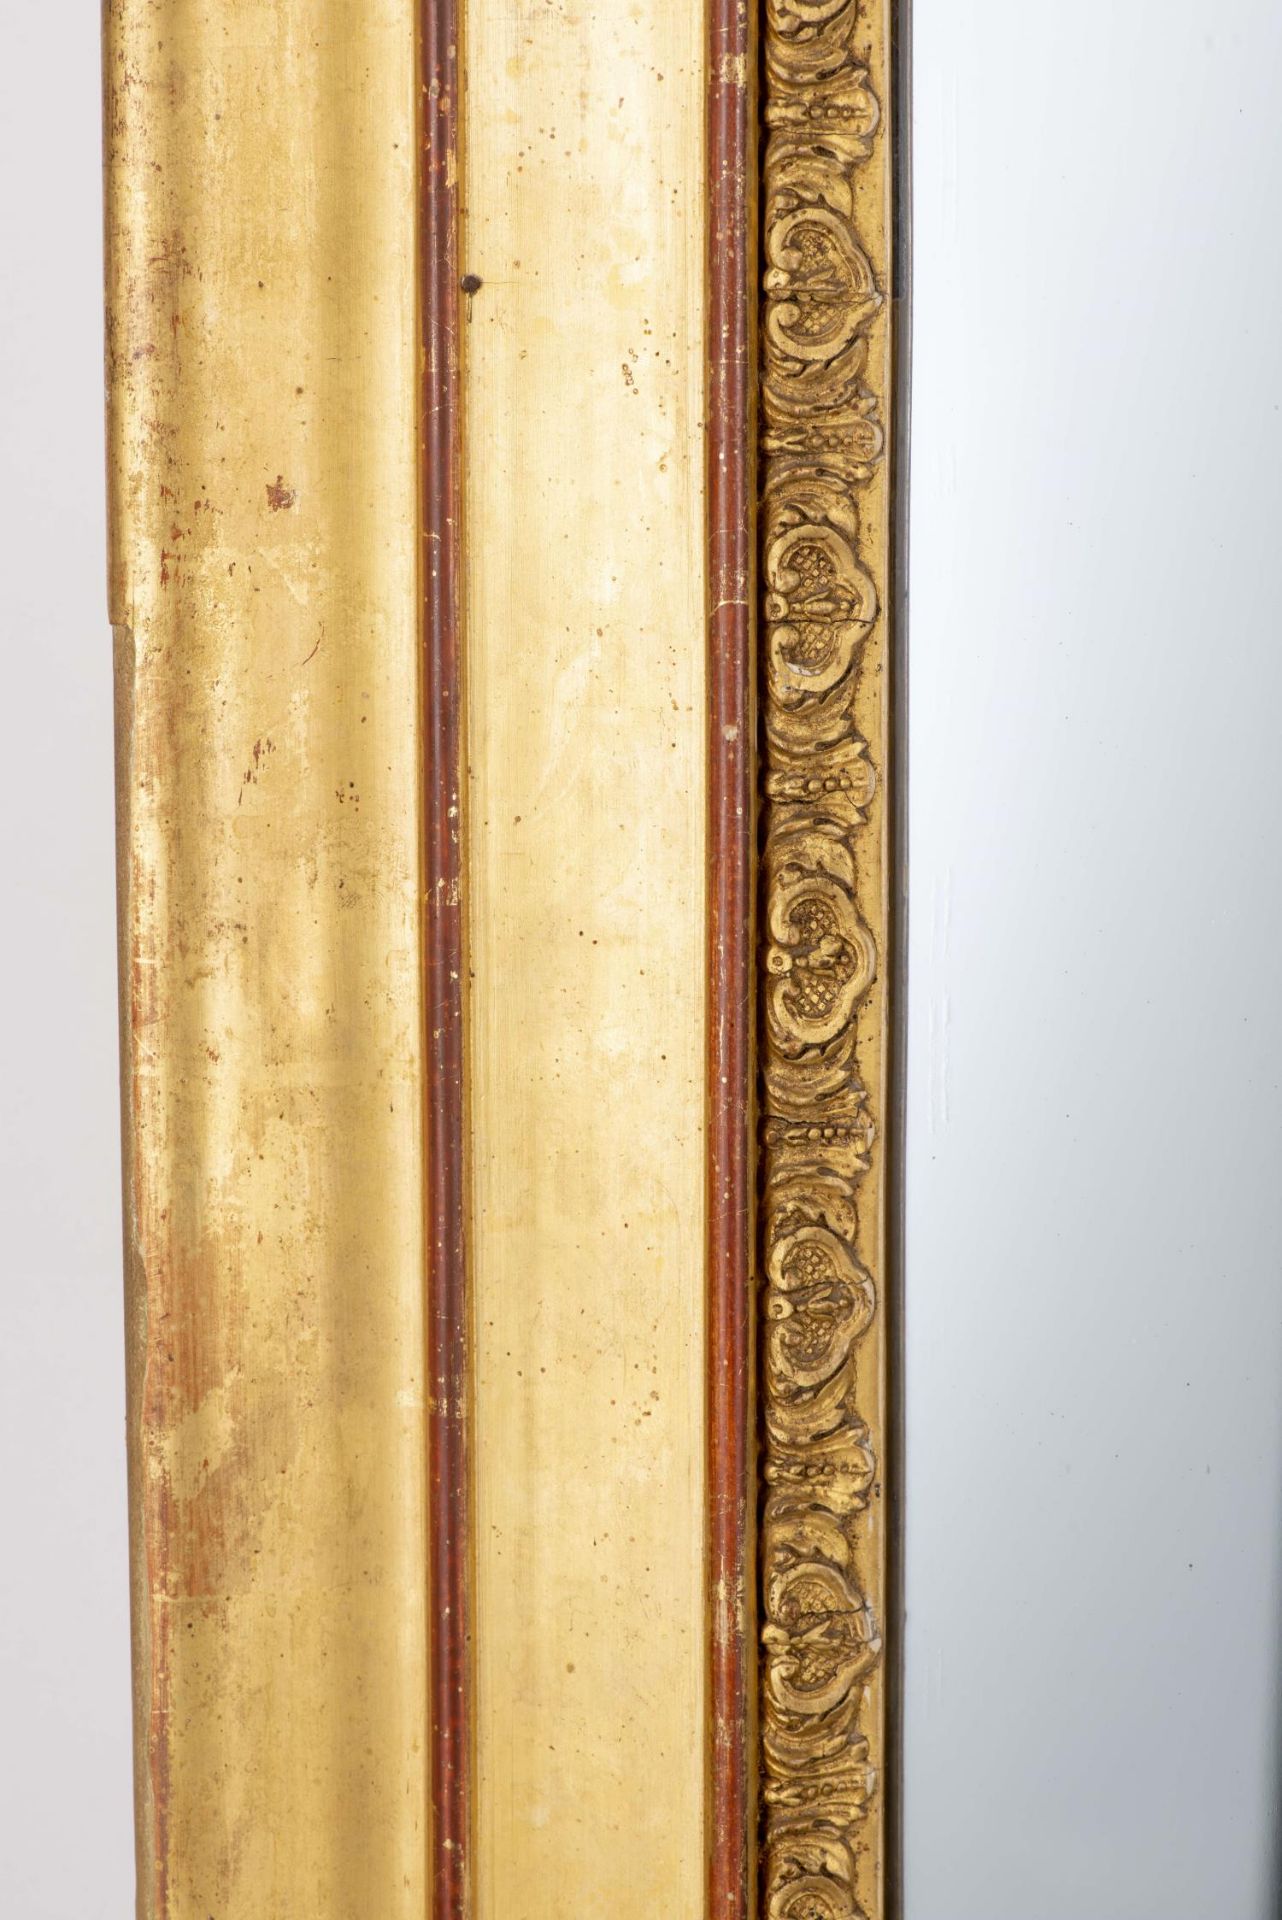 Miroir de cheminée au mercure à cadre en bois et stuc doré d'époque Nap. III. H. [...] - Image 2 of 4